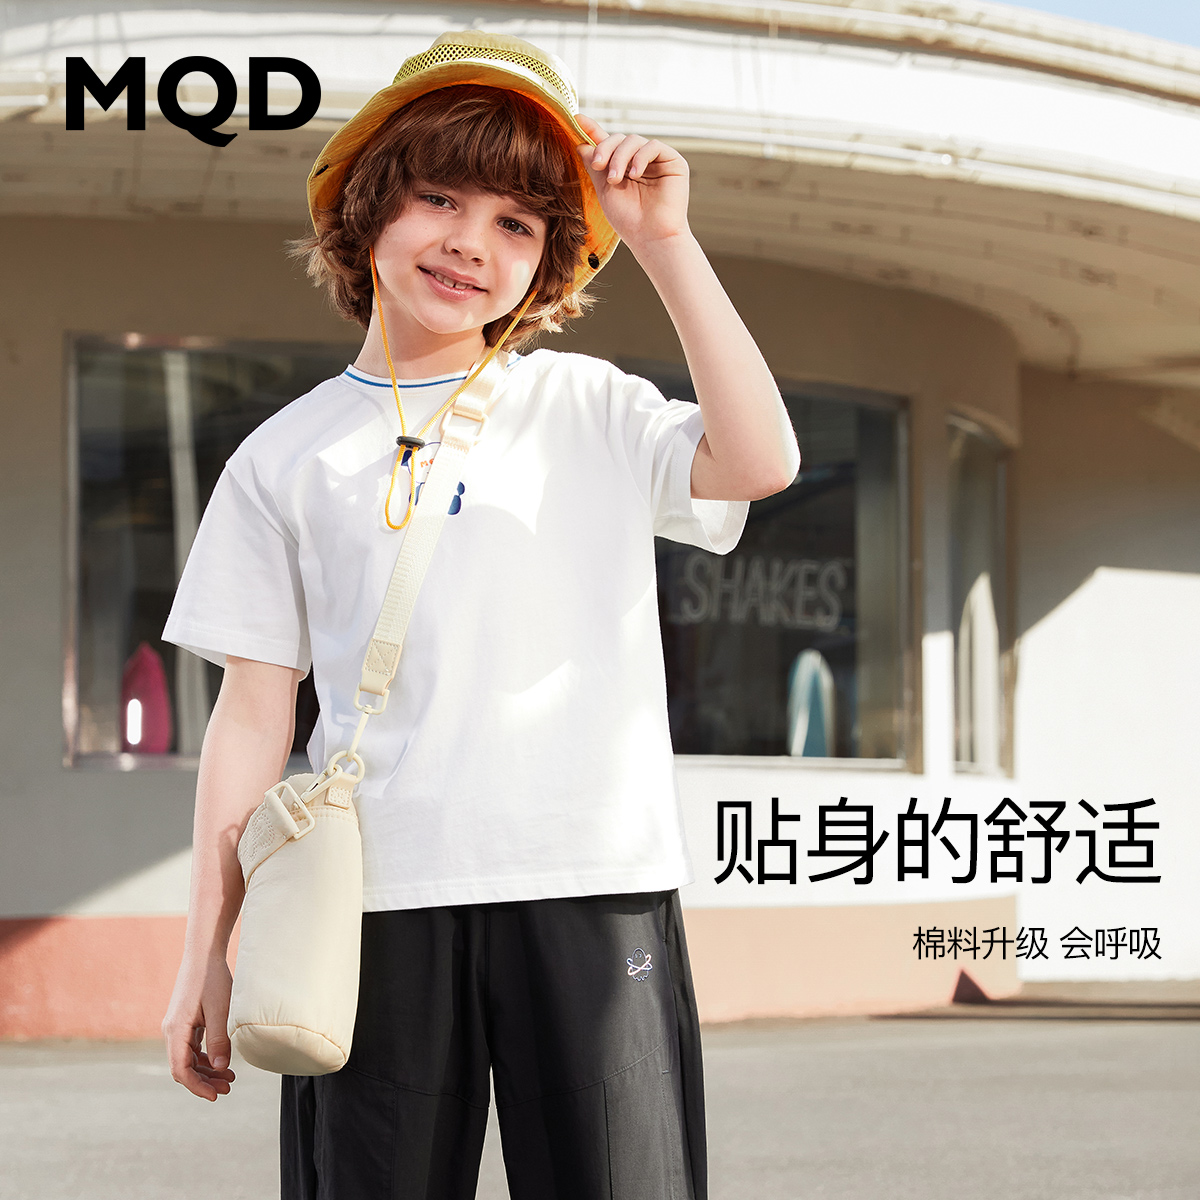 马骑顿（MQD）儿童T恤怎么样？是几线品牌的？质量会不会很糟糕？？